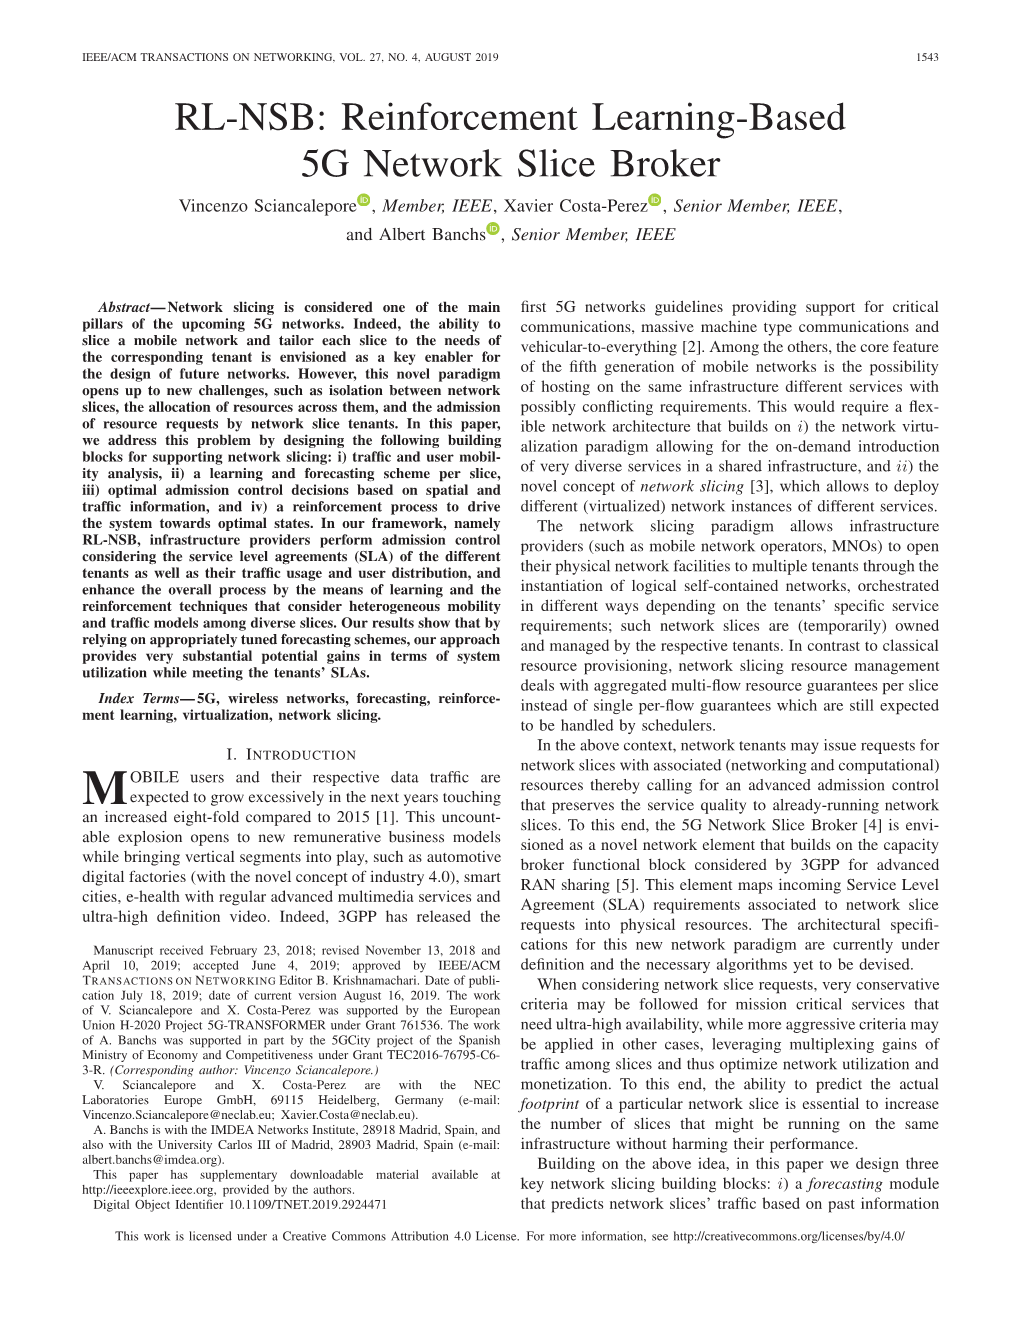 RL-NSB: Reinforcement Learning-Based 5G Network Slice Broker